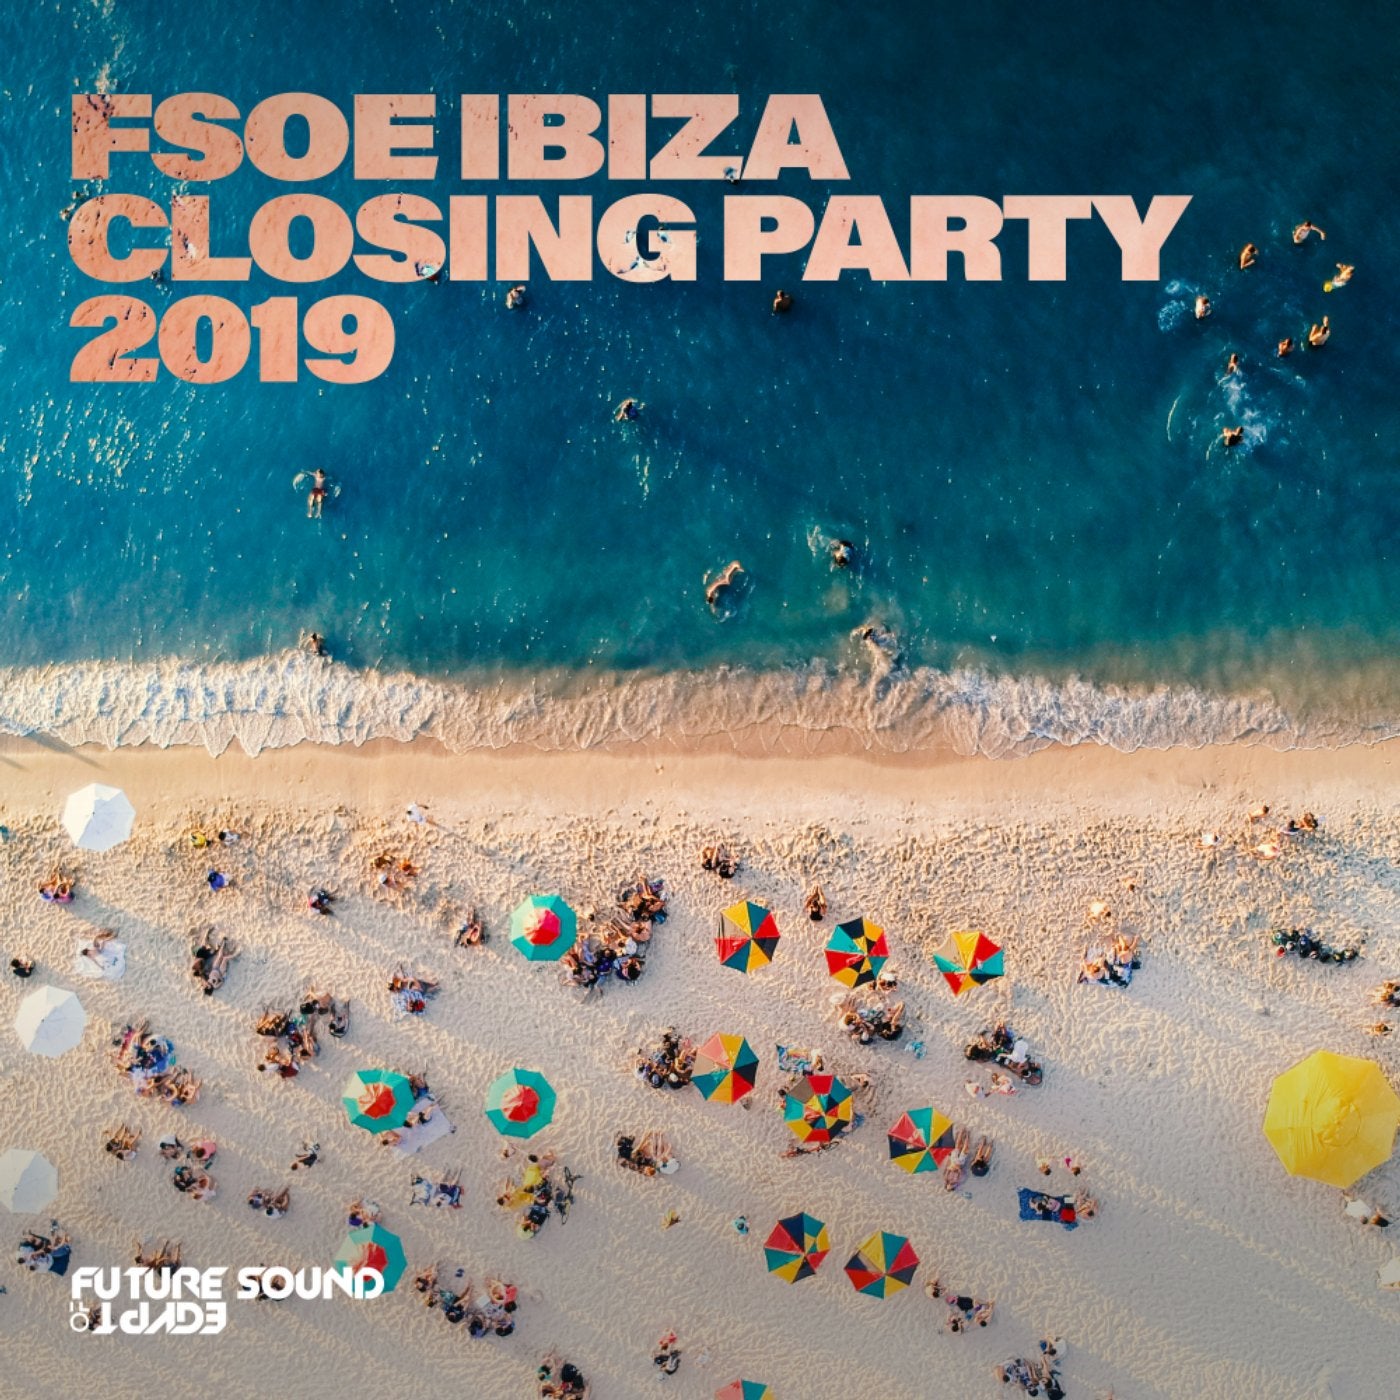 FSOE Ibiza Closing Party 2019